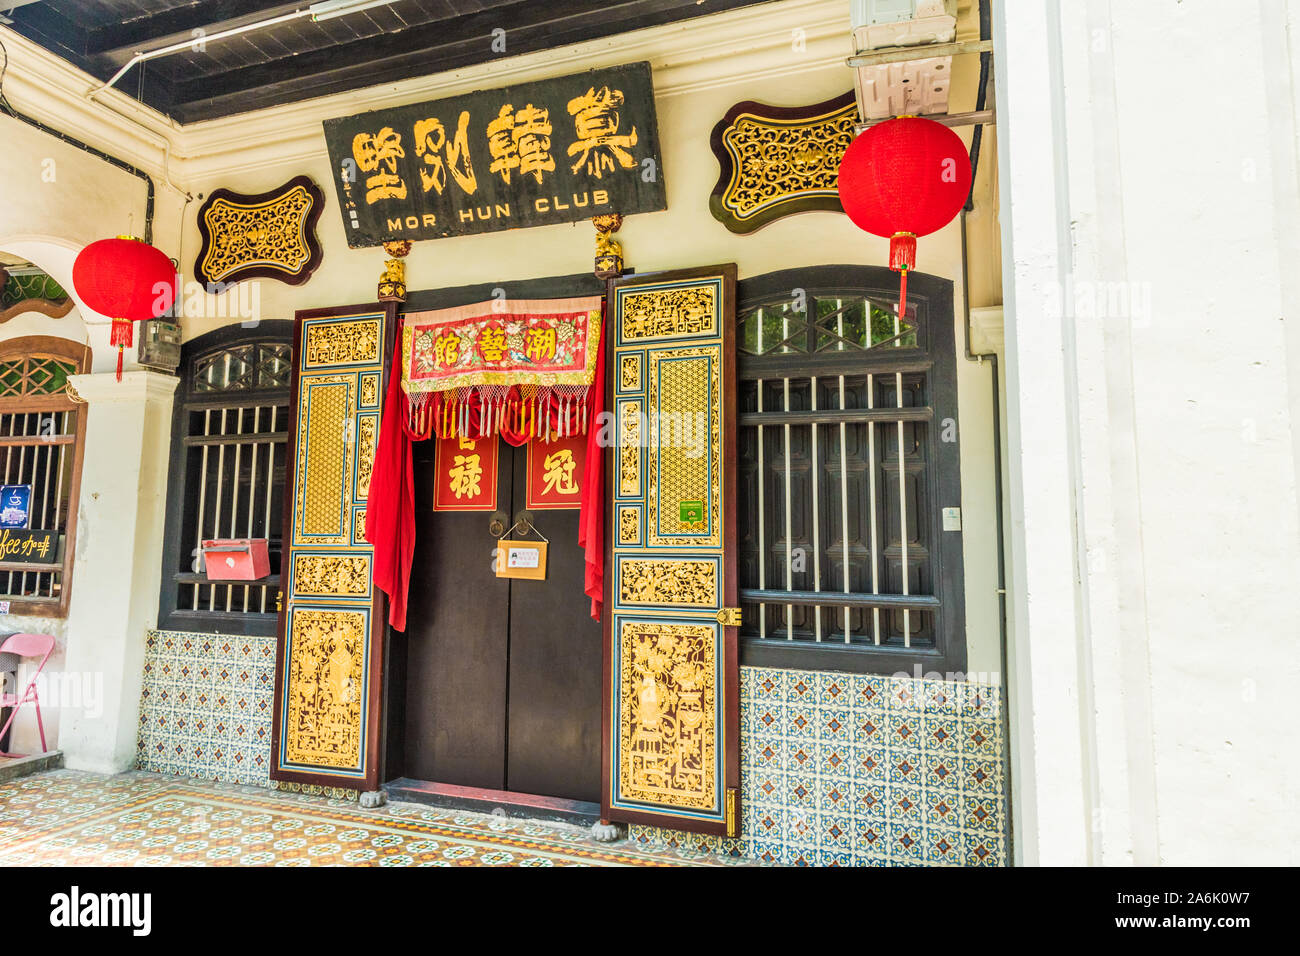 Un shophouse chinoise typique dans la région de George Town, Malaisie Banque D'Images